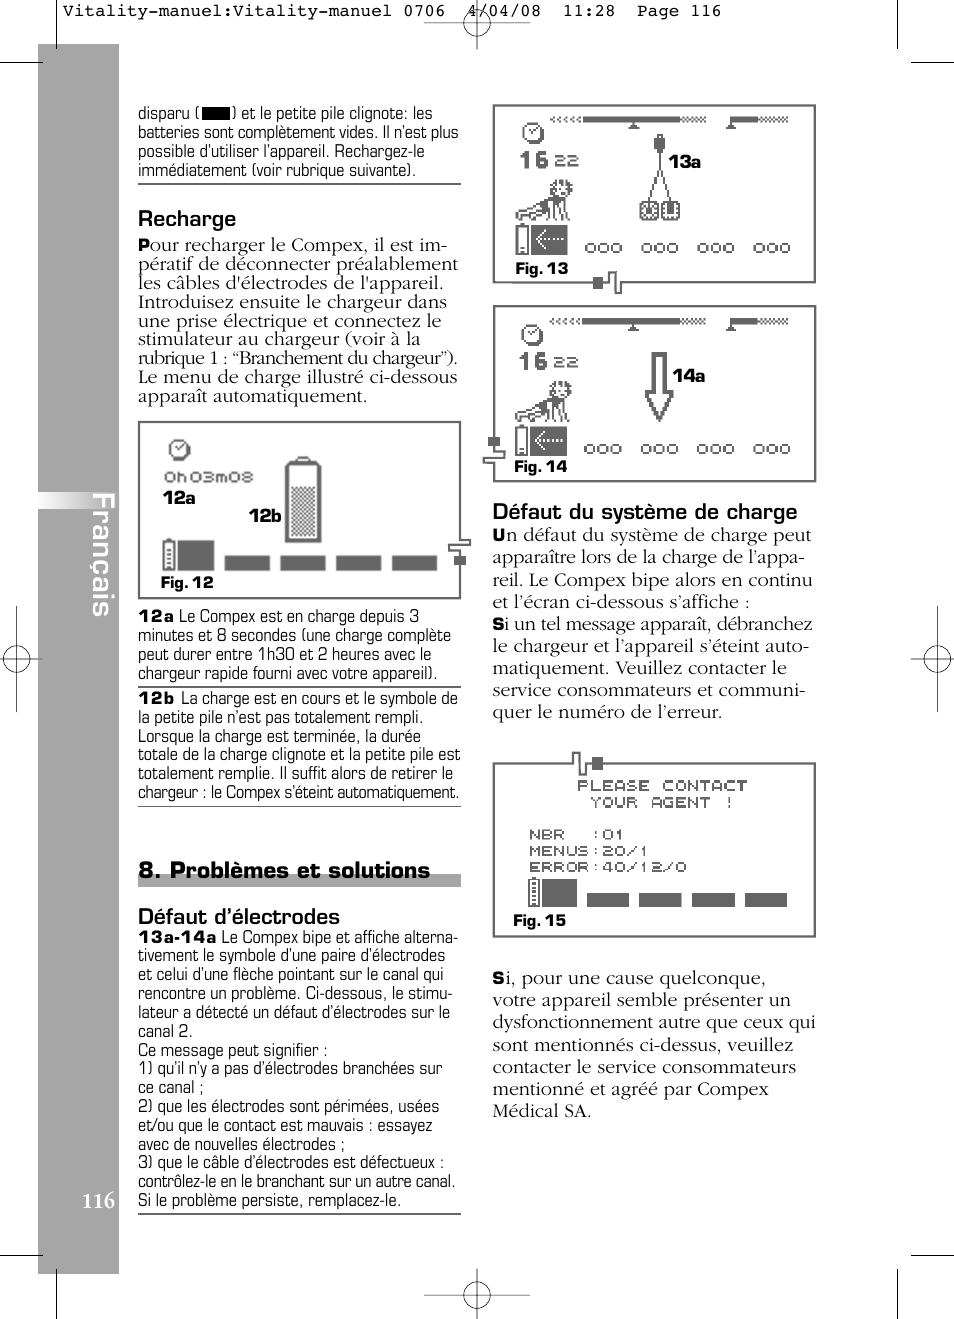 Français, Problèmes et solutions | Compex Vitality User Manual | Page 116 /  308